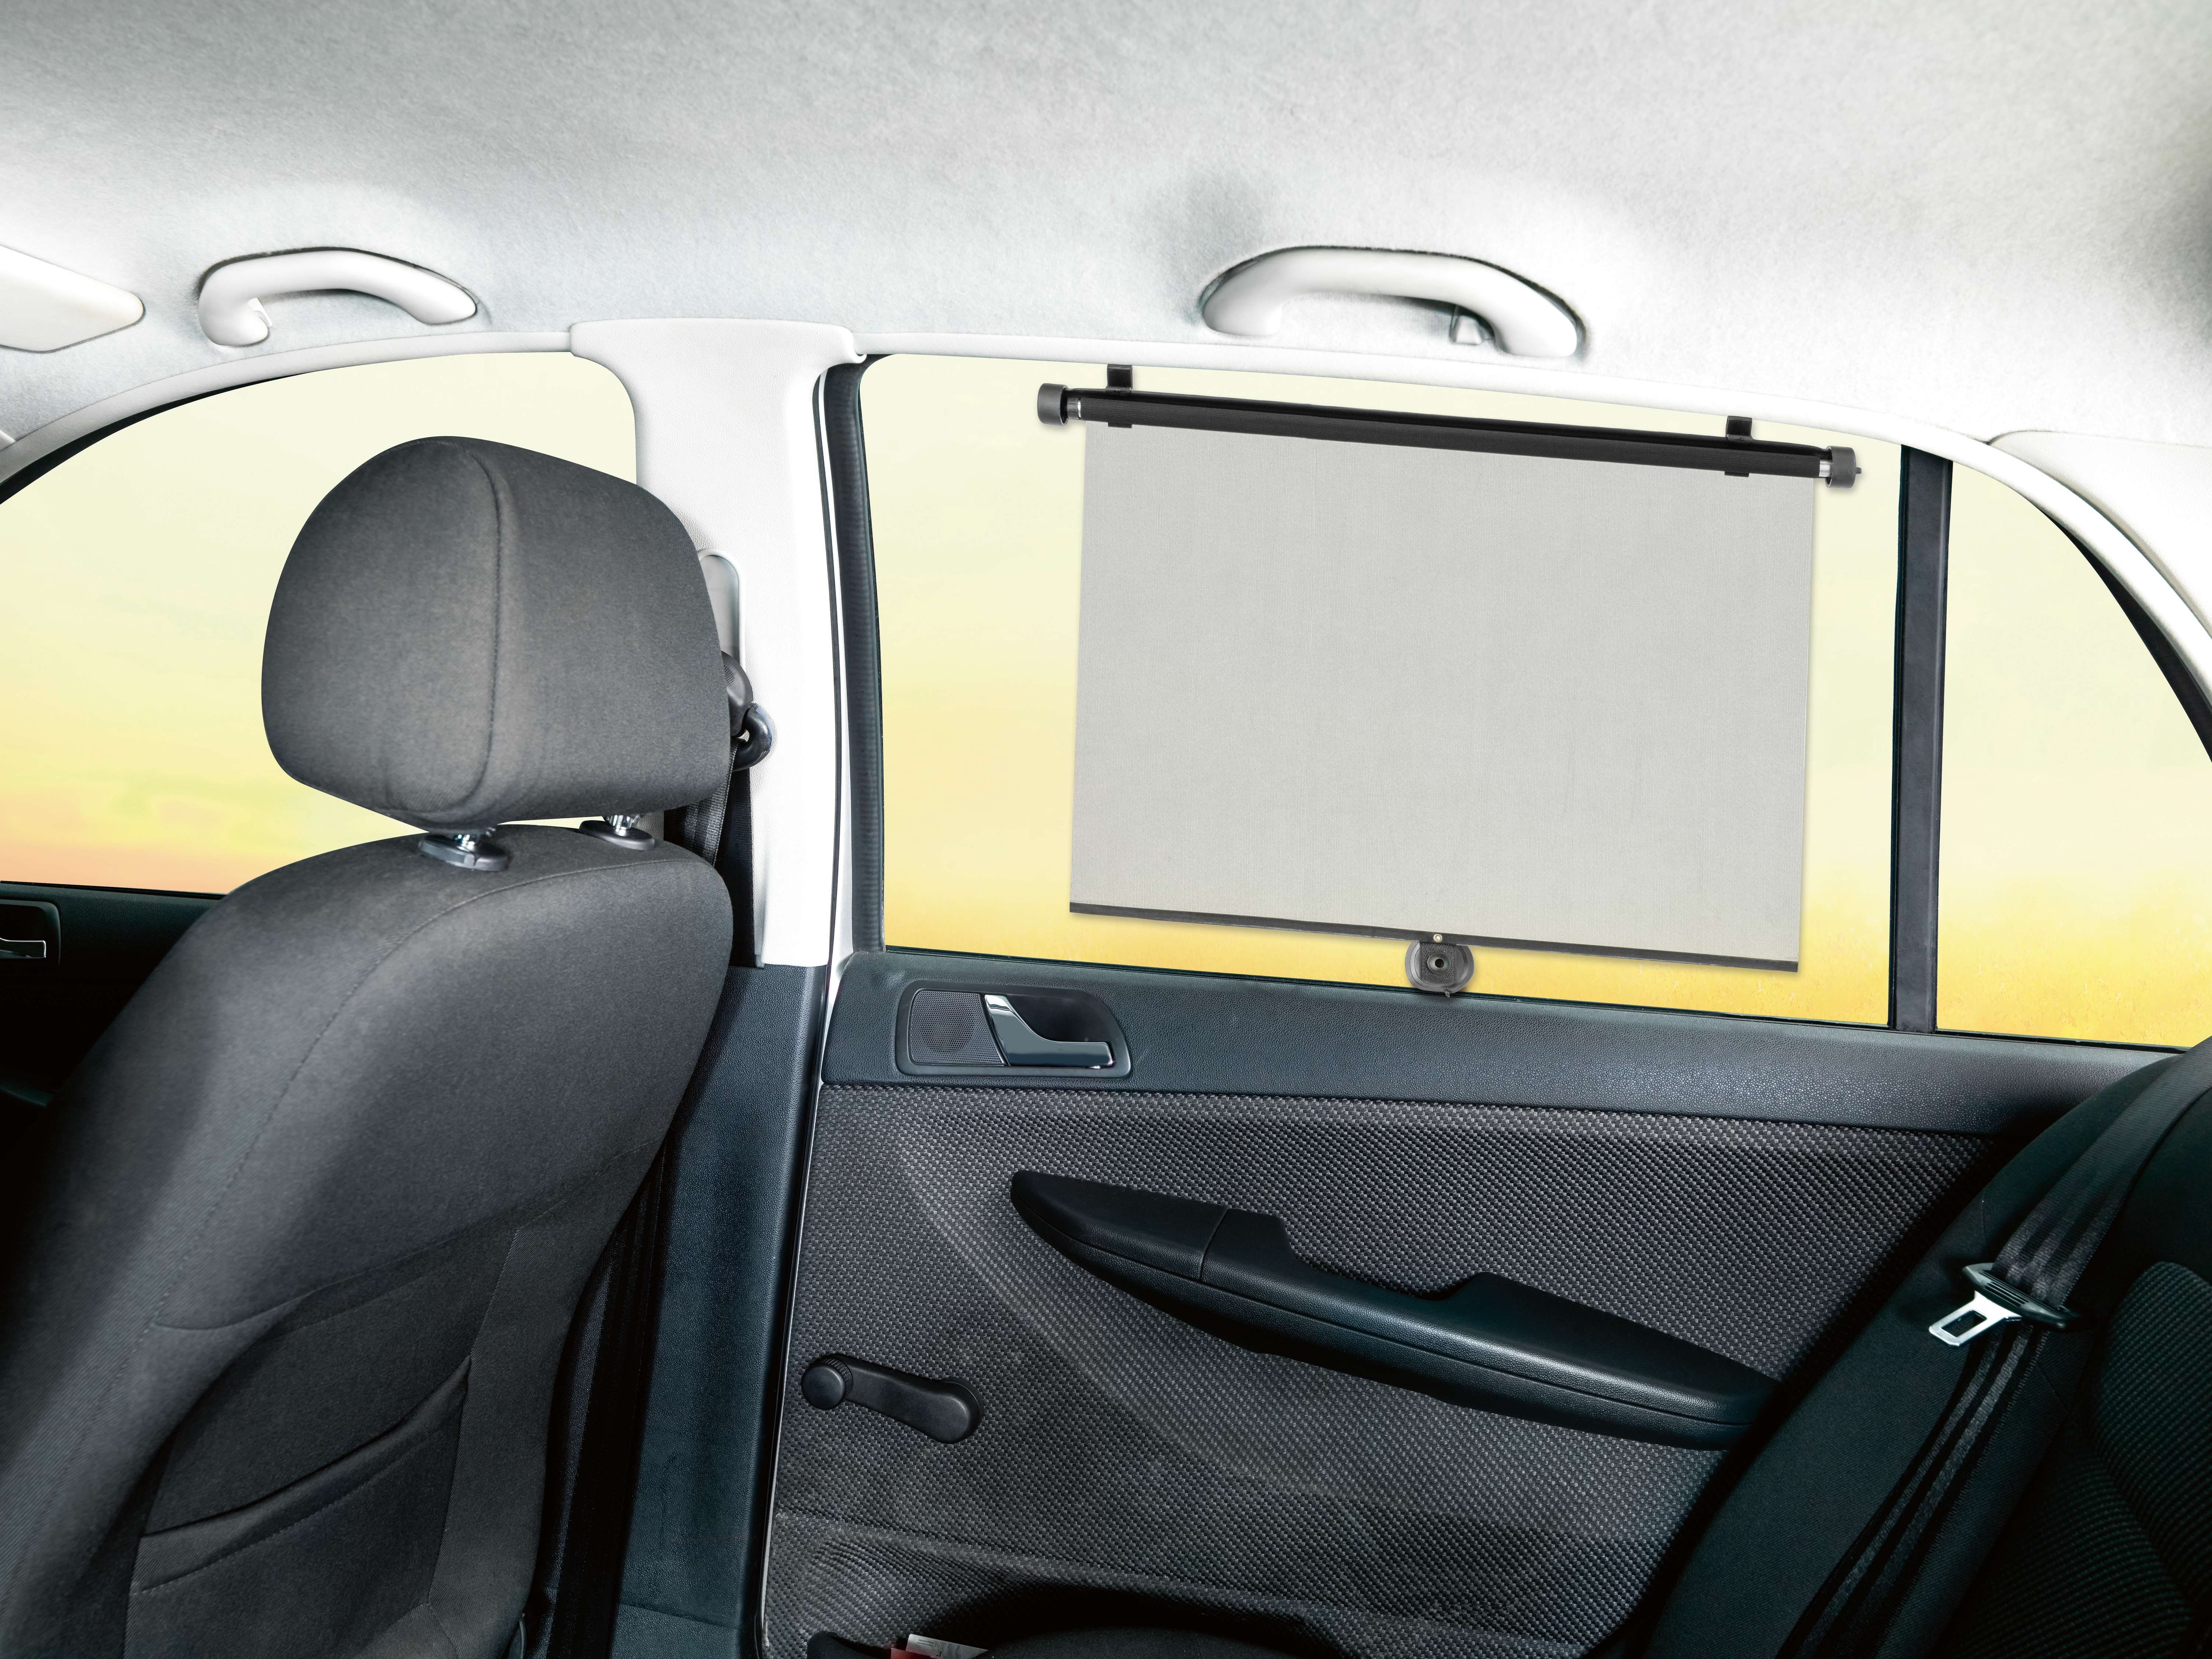 Auto-Sonnenrollo, 2 Stück Sonnenblenden für VAN/Transporter Seitenfenster - 53 x 56 cm